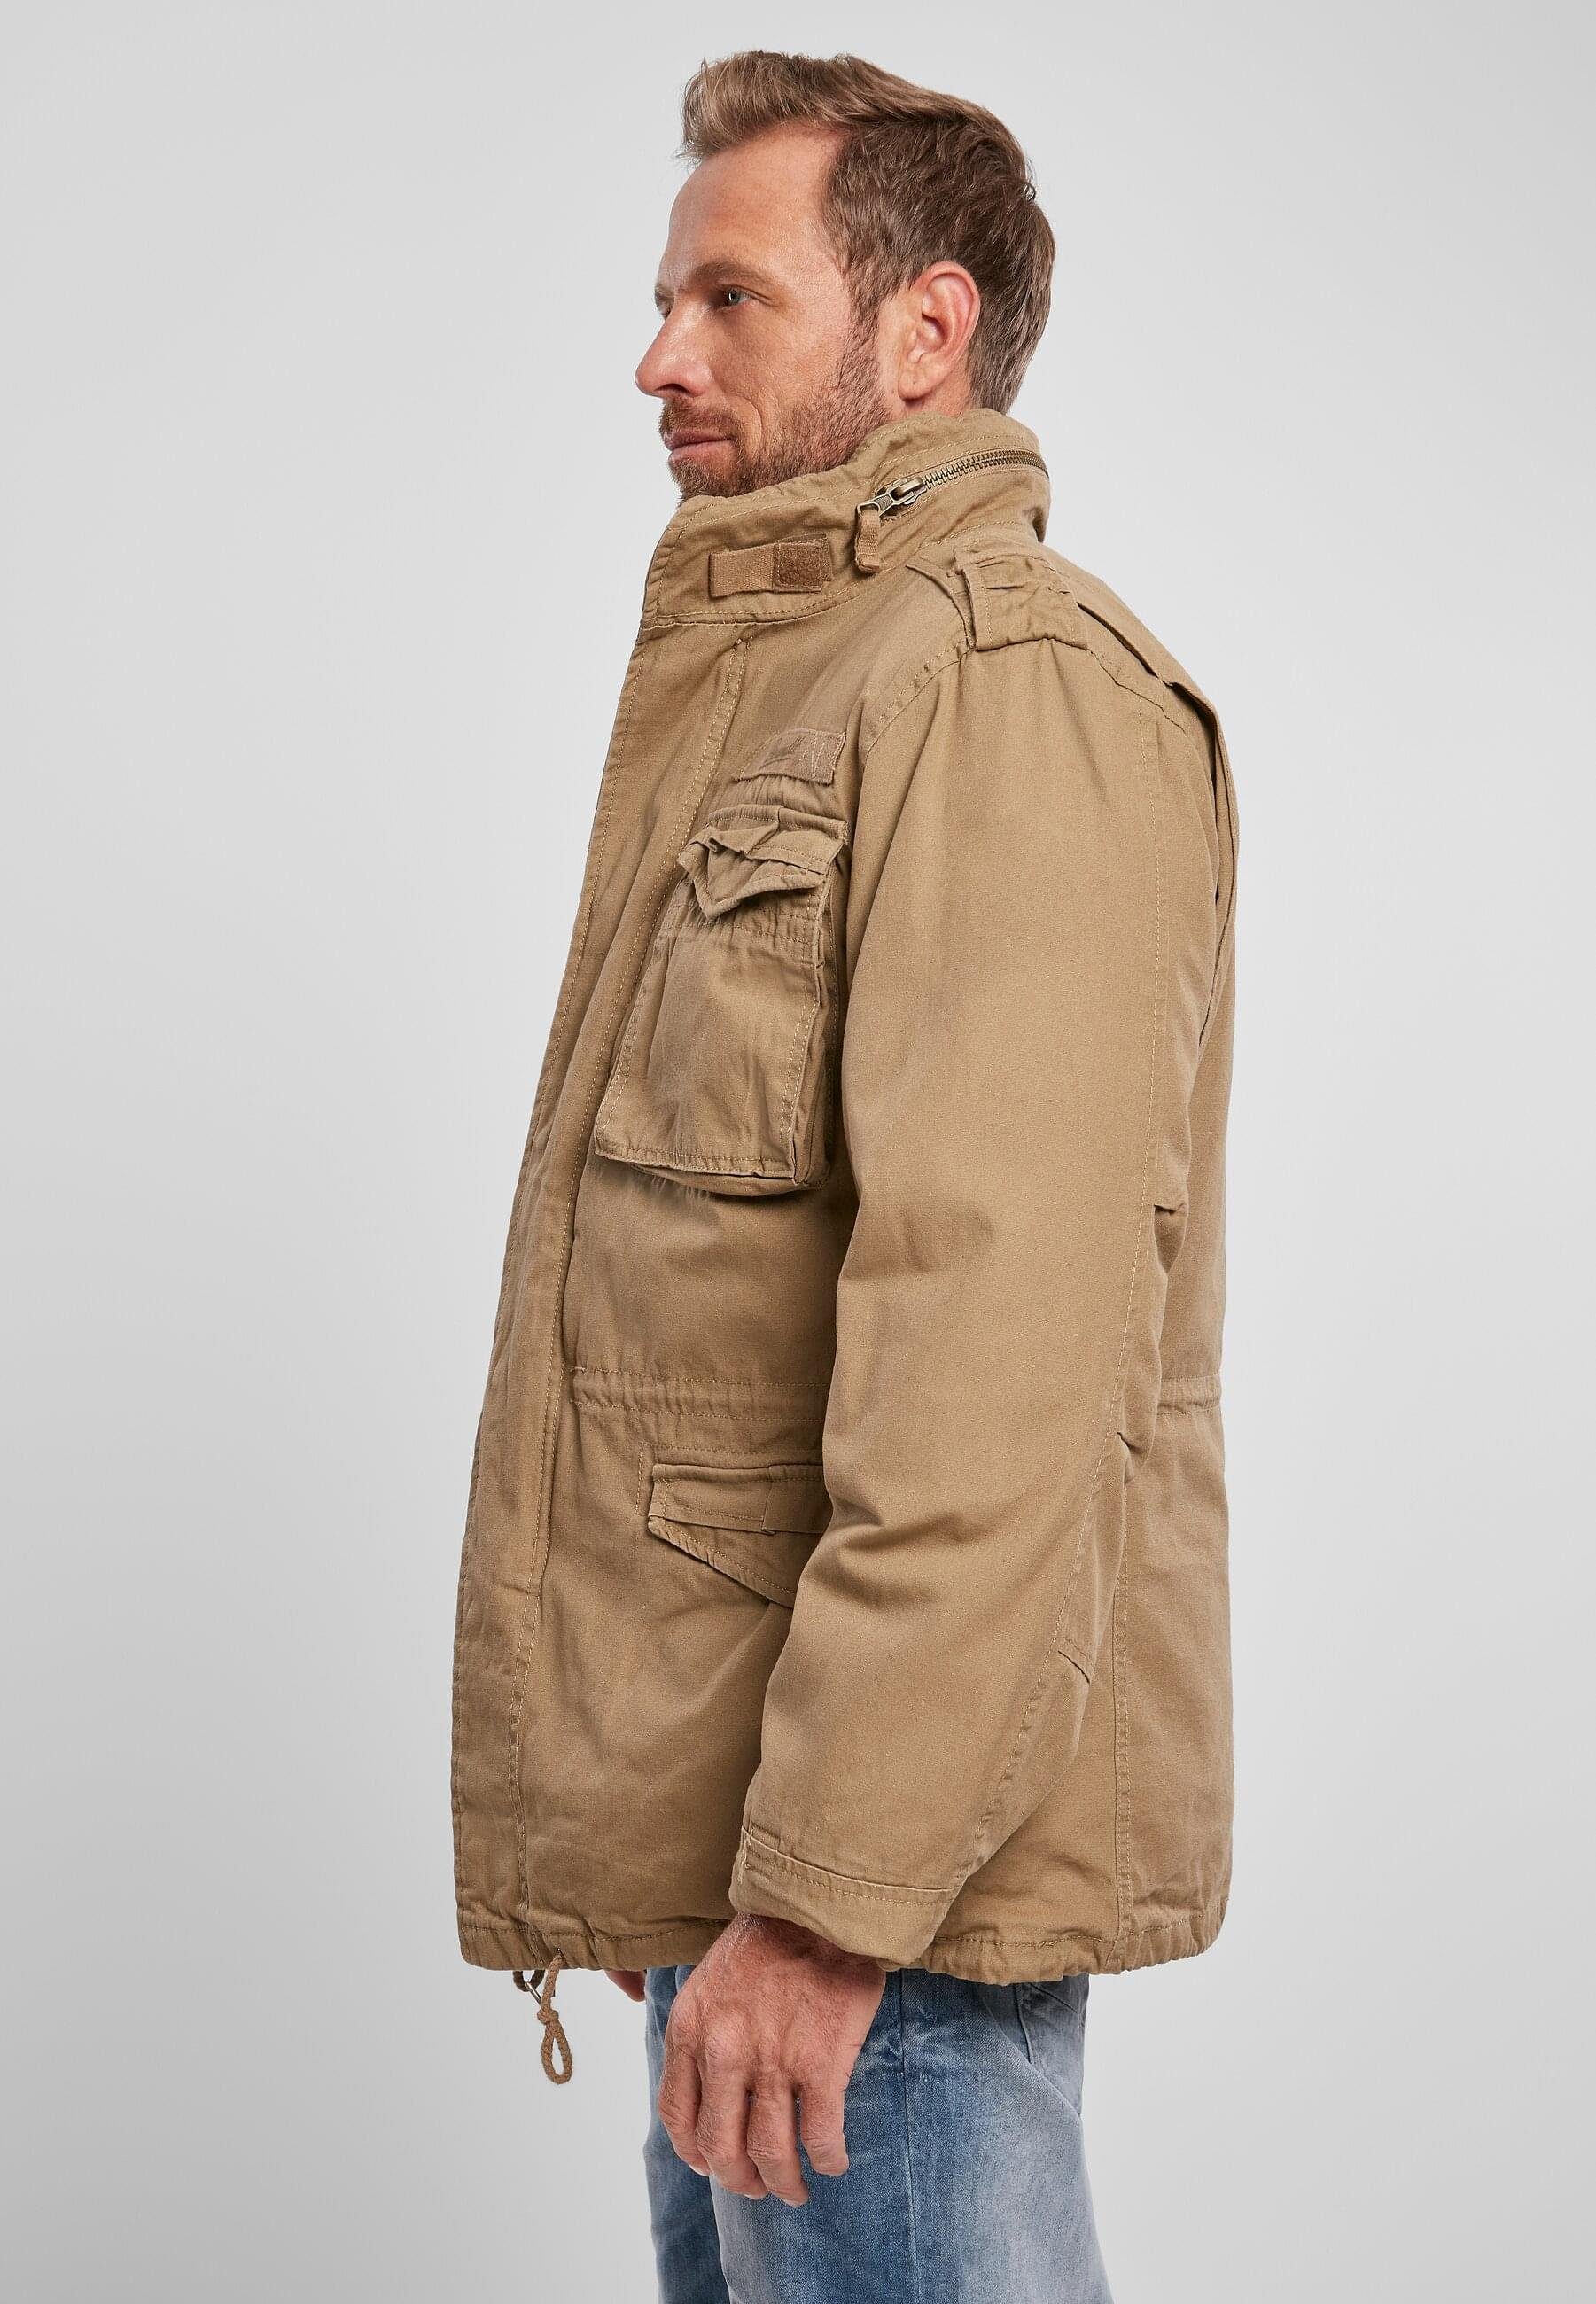 Herren M-65 Wintermantel camel Brandit Giant Jacket